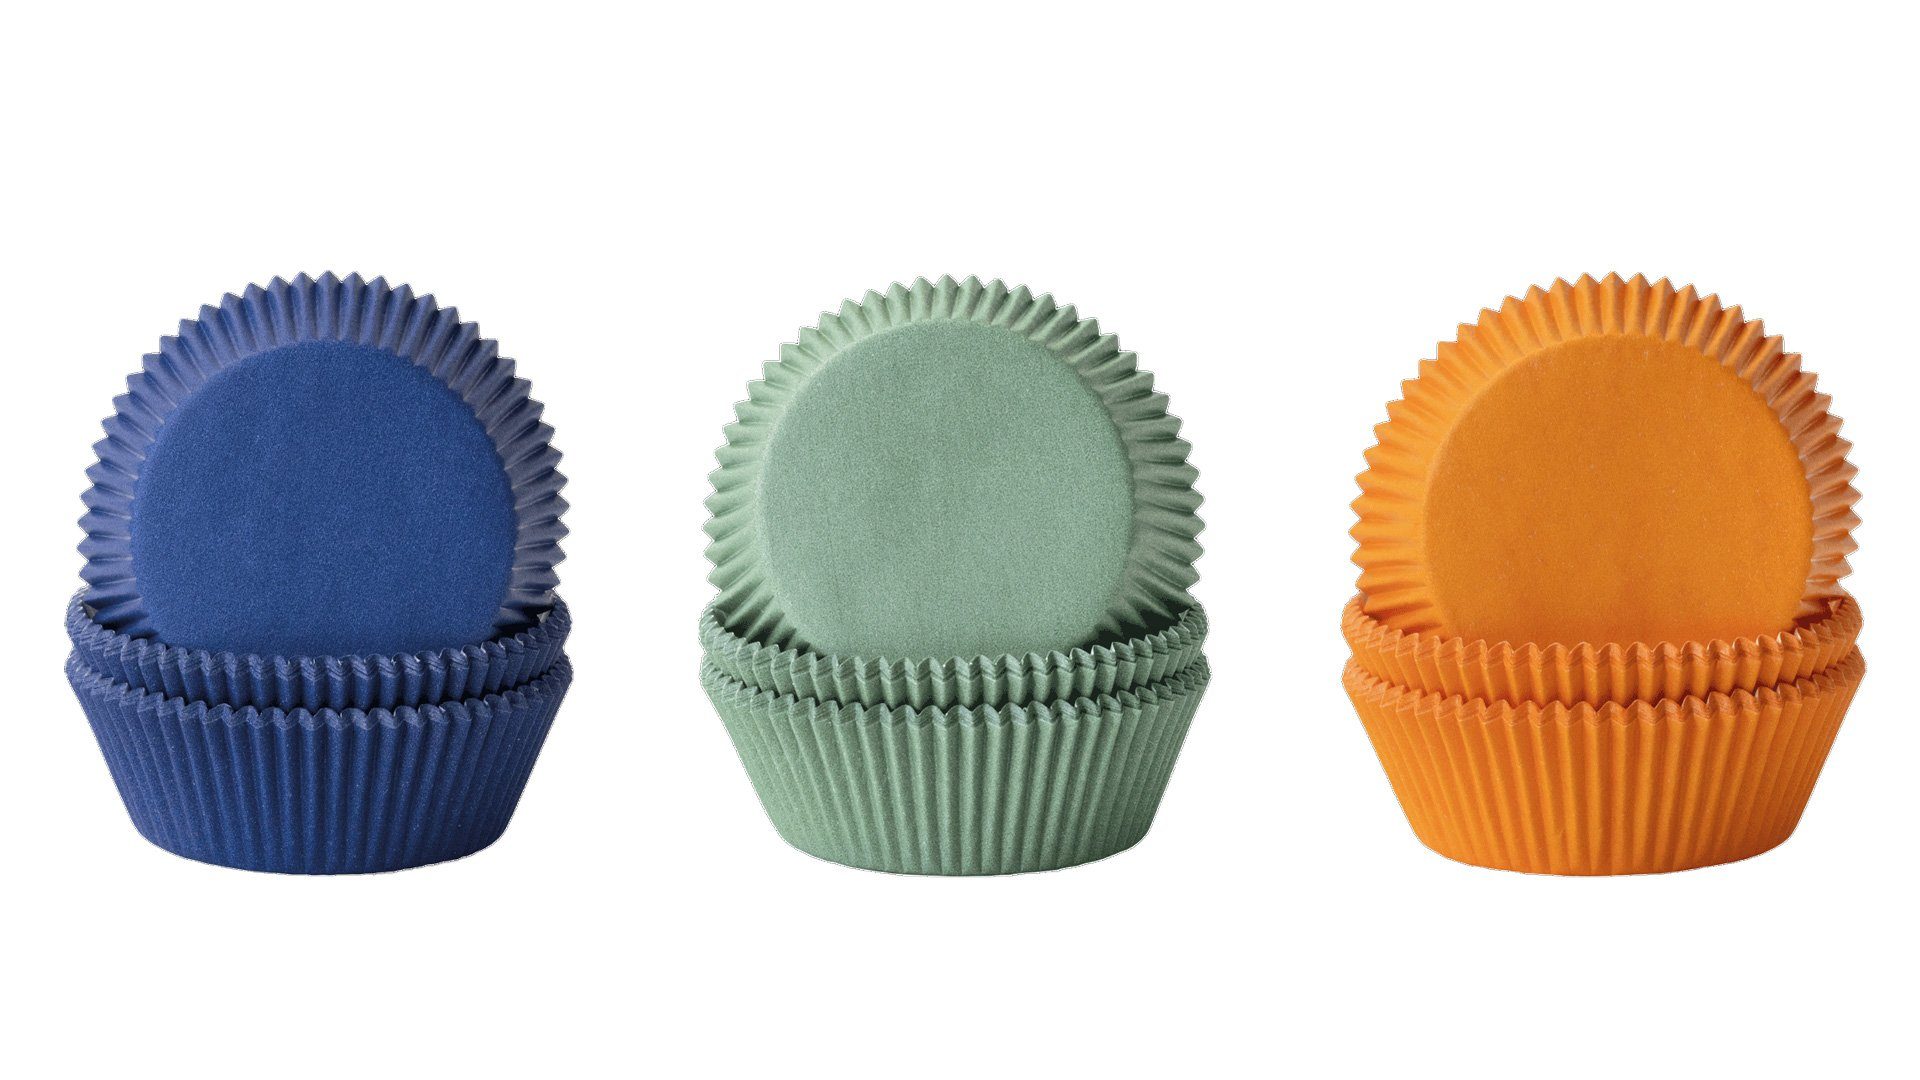 Demmler Muffinform Muffinset Unifarben - Mango, Jade, Blau - 3x60Stk.-, Backformenset mit 3 verschiedenen Förmchen - Made in Germany